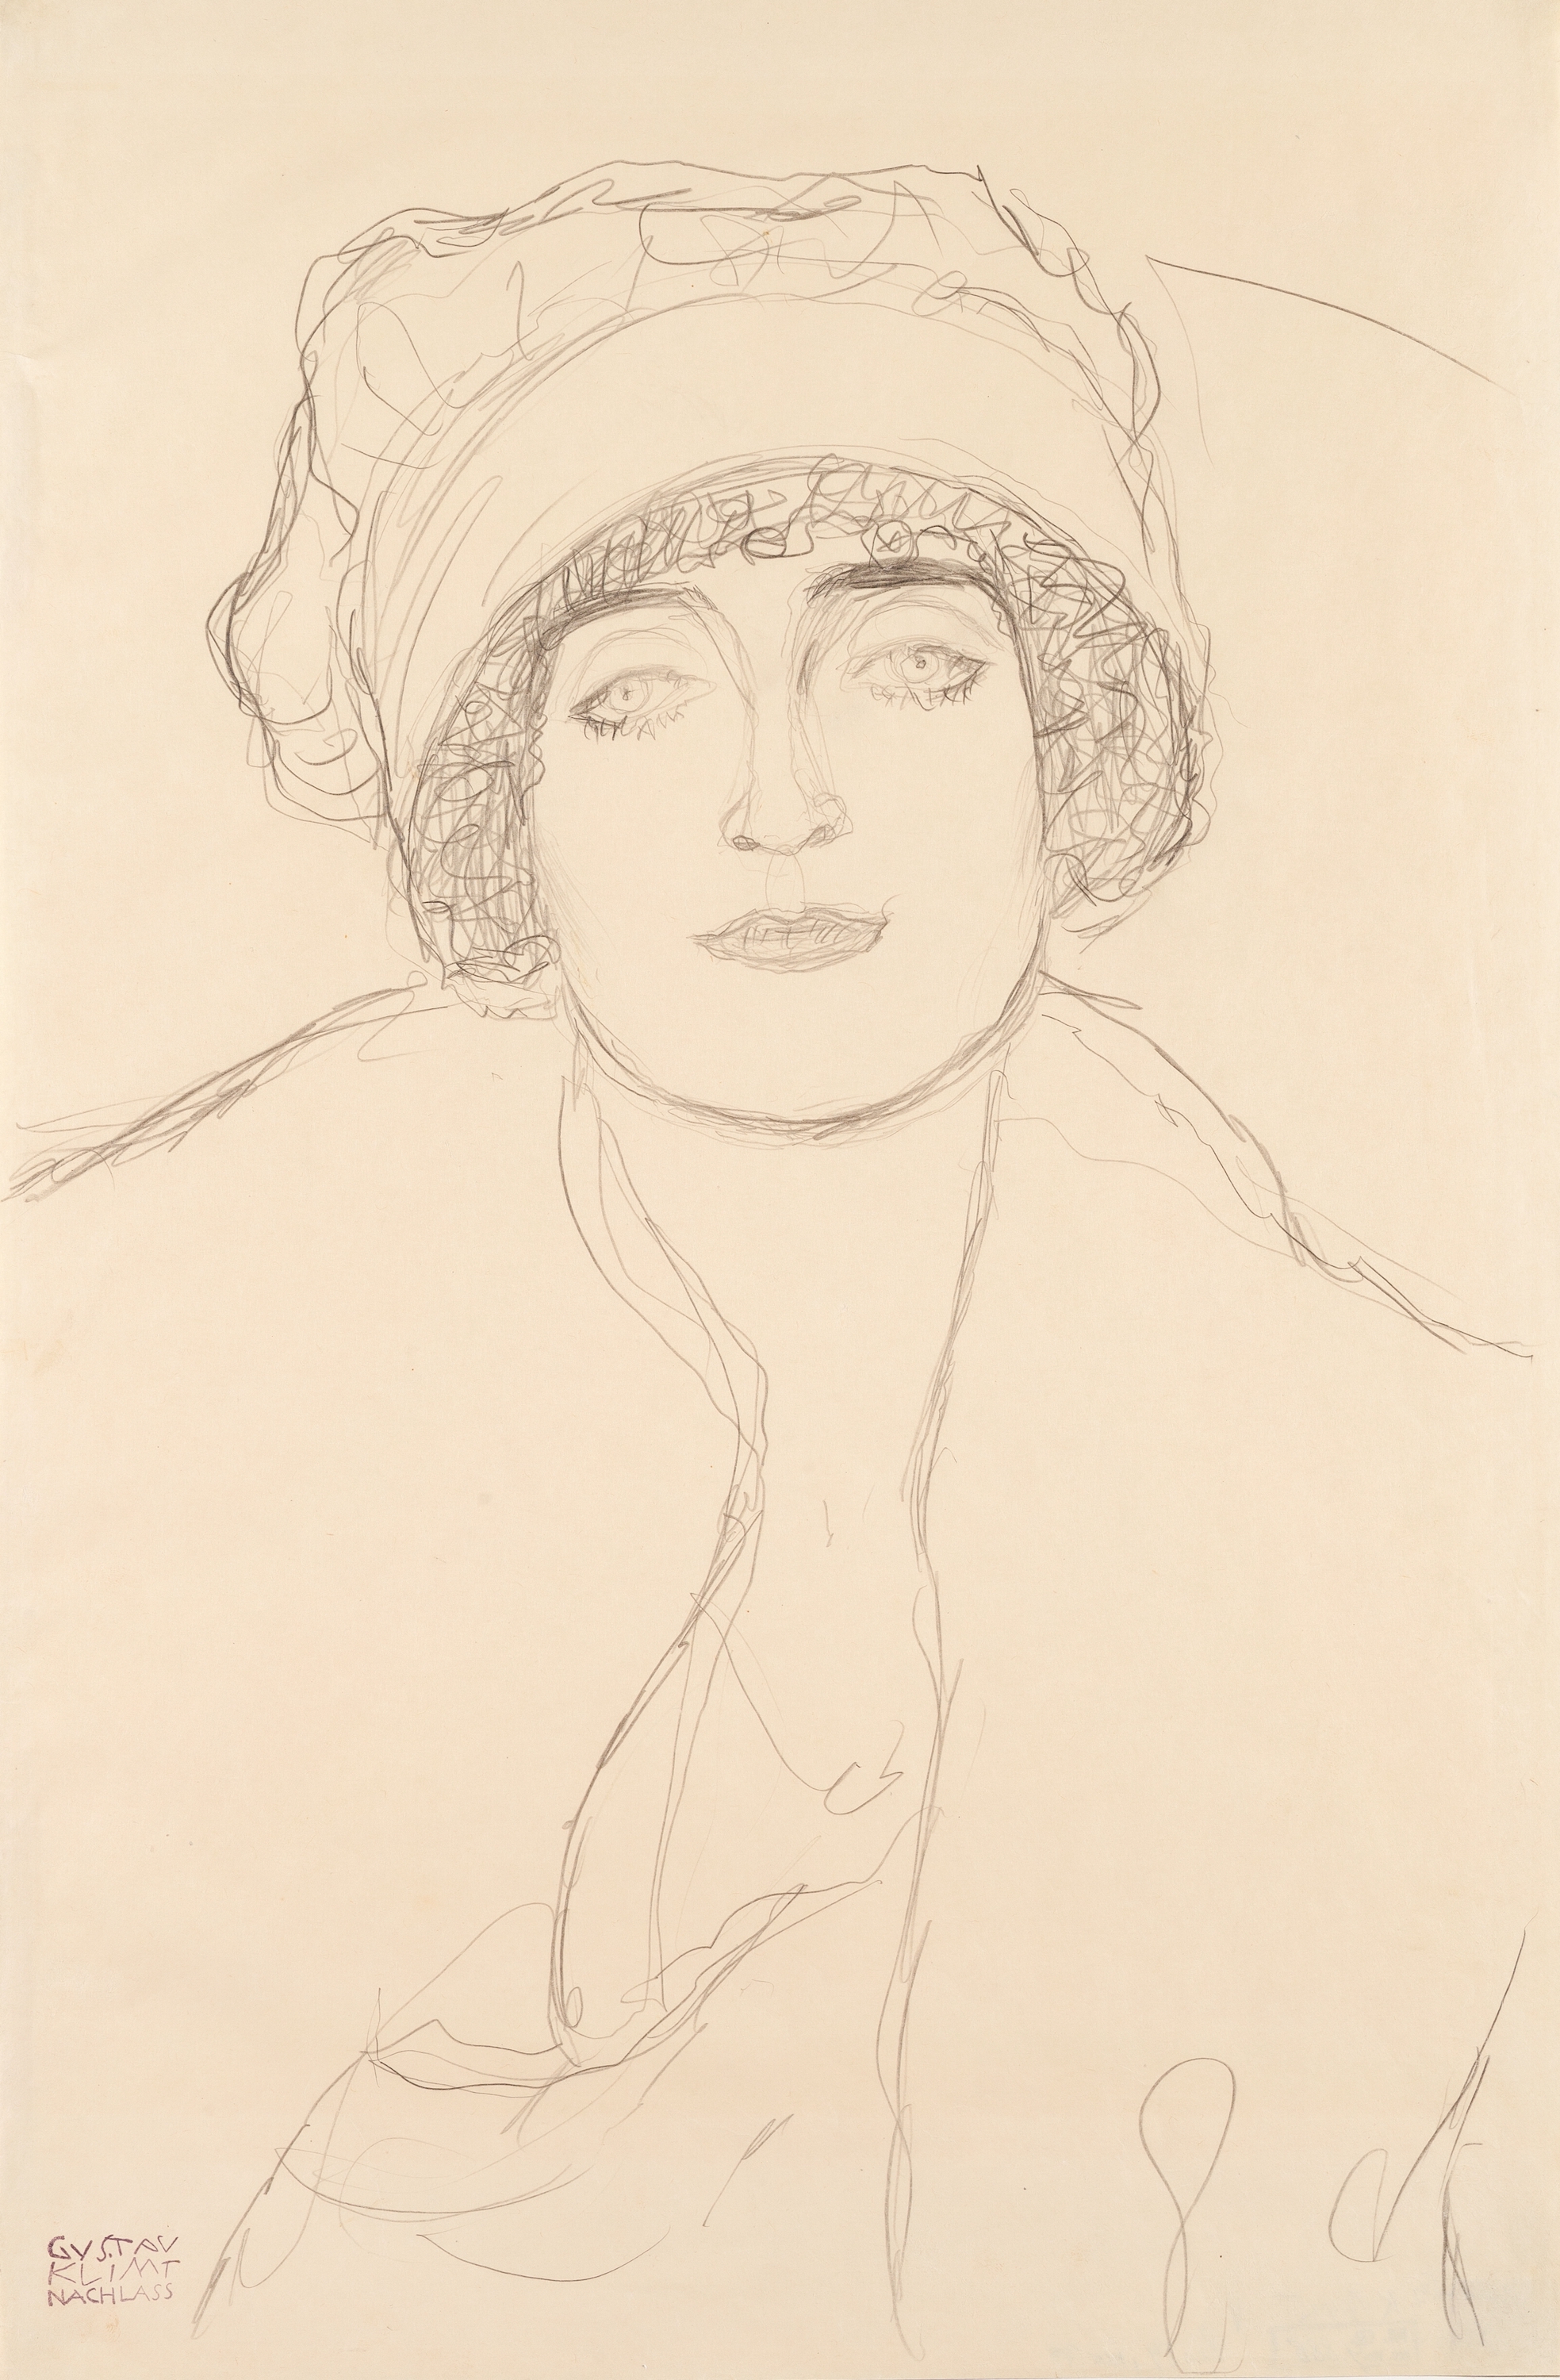 帽子をかぶった肖像 by グスタフ クリムト - 1917 -1918 - 570 x 375 mm 